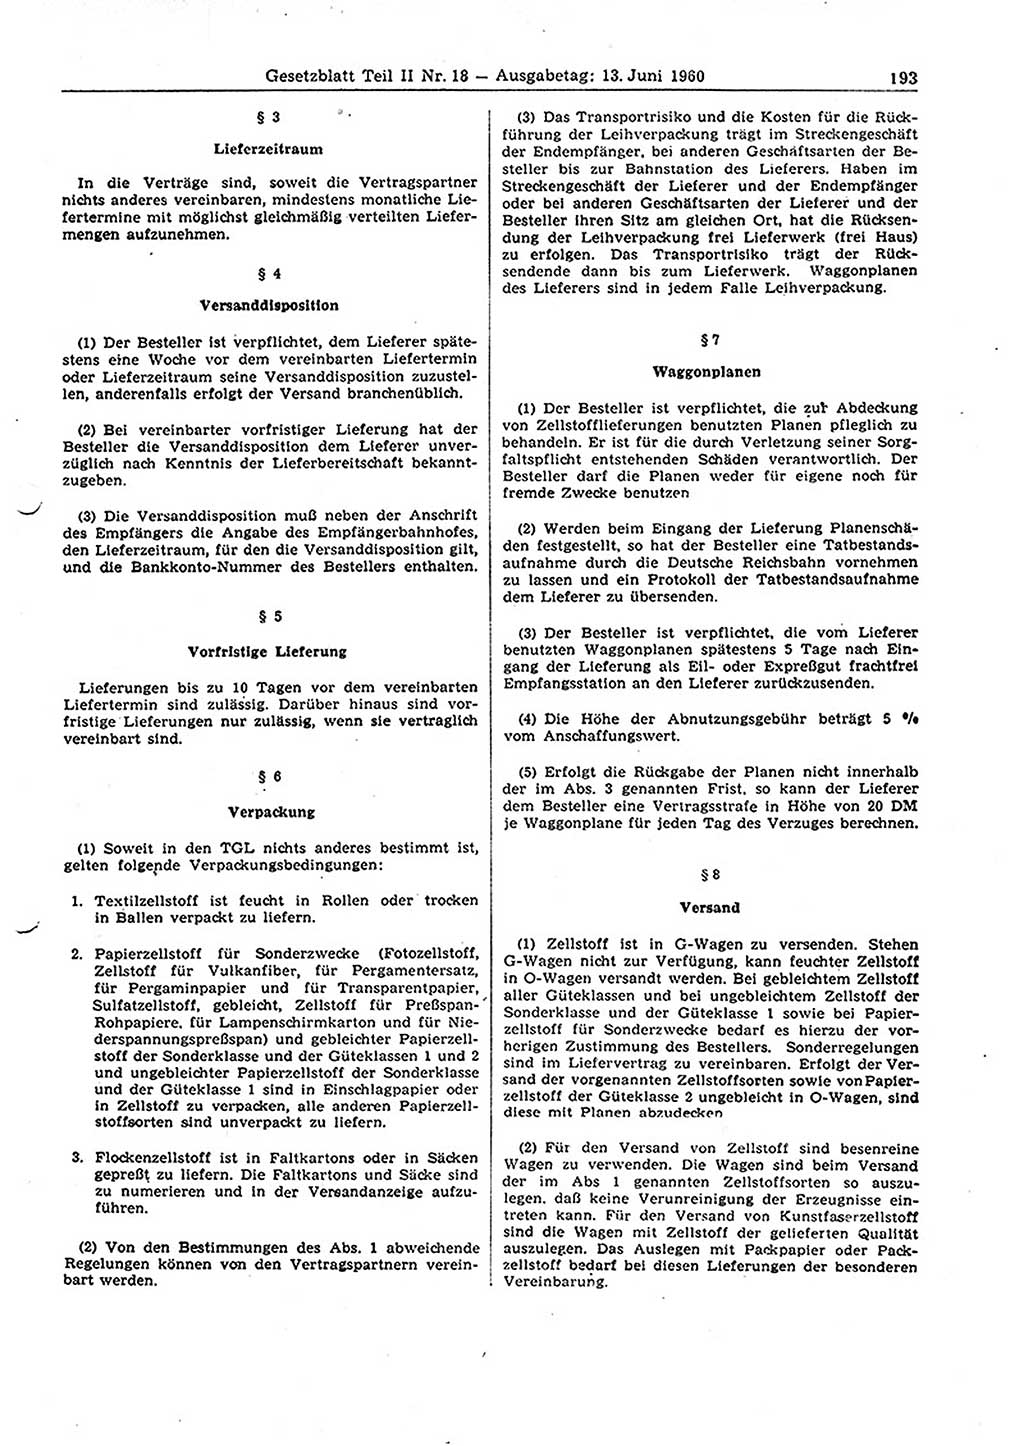 Gesetzblatt (GBl.) der Deutschen Demokratischen Republik (DDR) Teil ⅠⅠ 1960, Seite 193 (GBl. DDR ⅠⅠ 1960, S. 193)